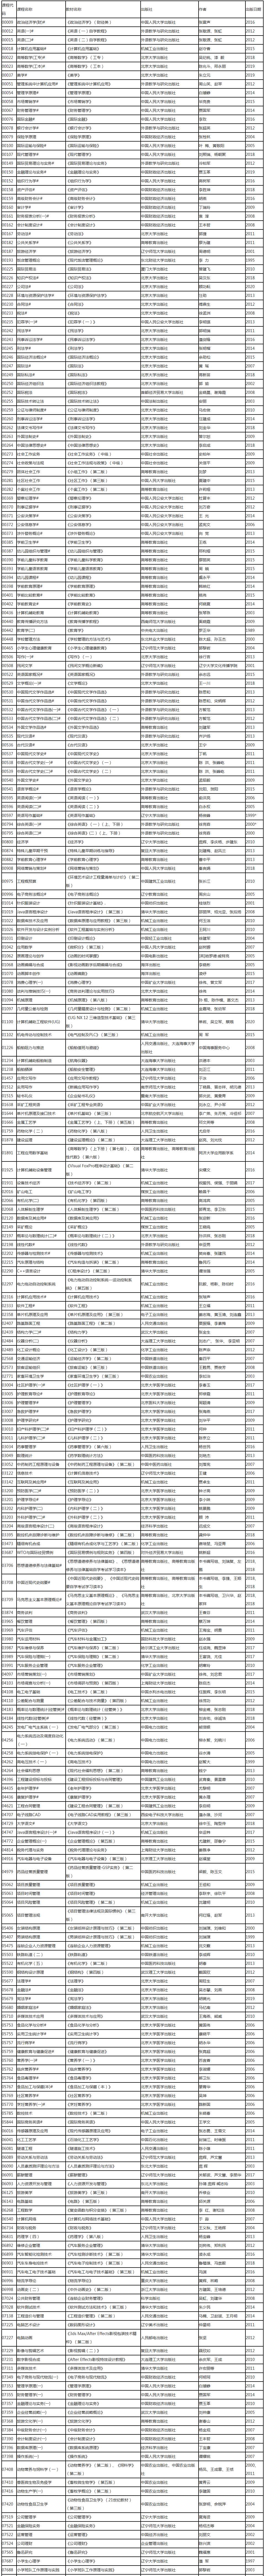 辽宁省高等教育自学考试2021年4月考试课程教材信息表